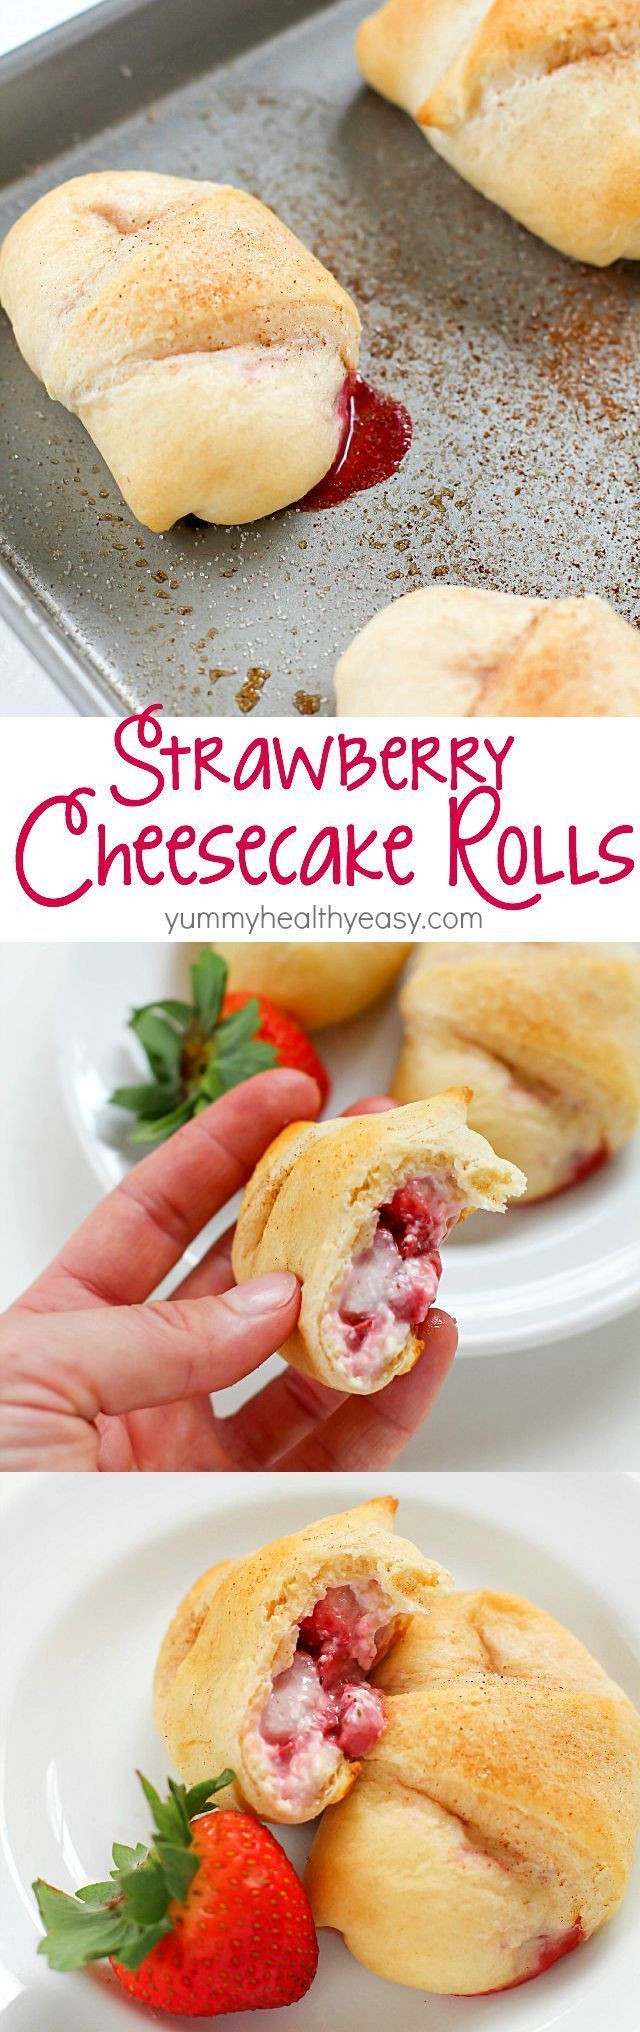 Pillsbury Crescent Roll Dessert Recipes
 crescent roll dessert recipes with cream cheese